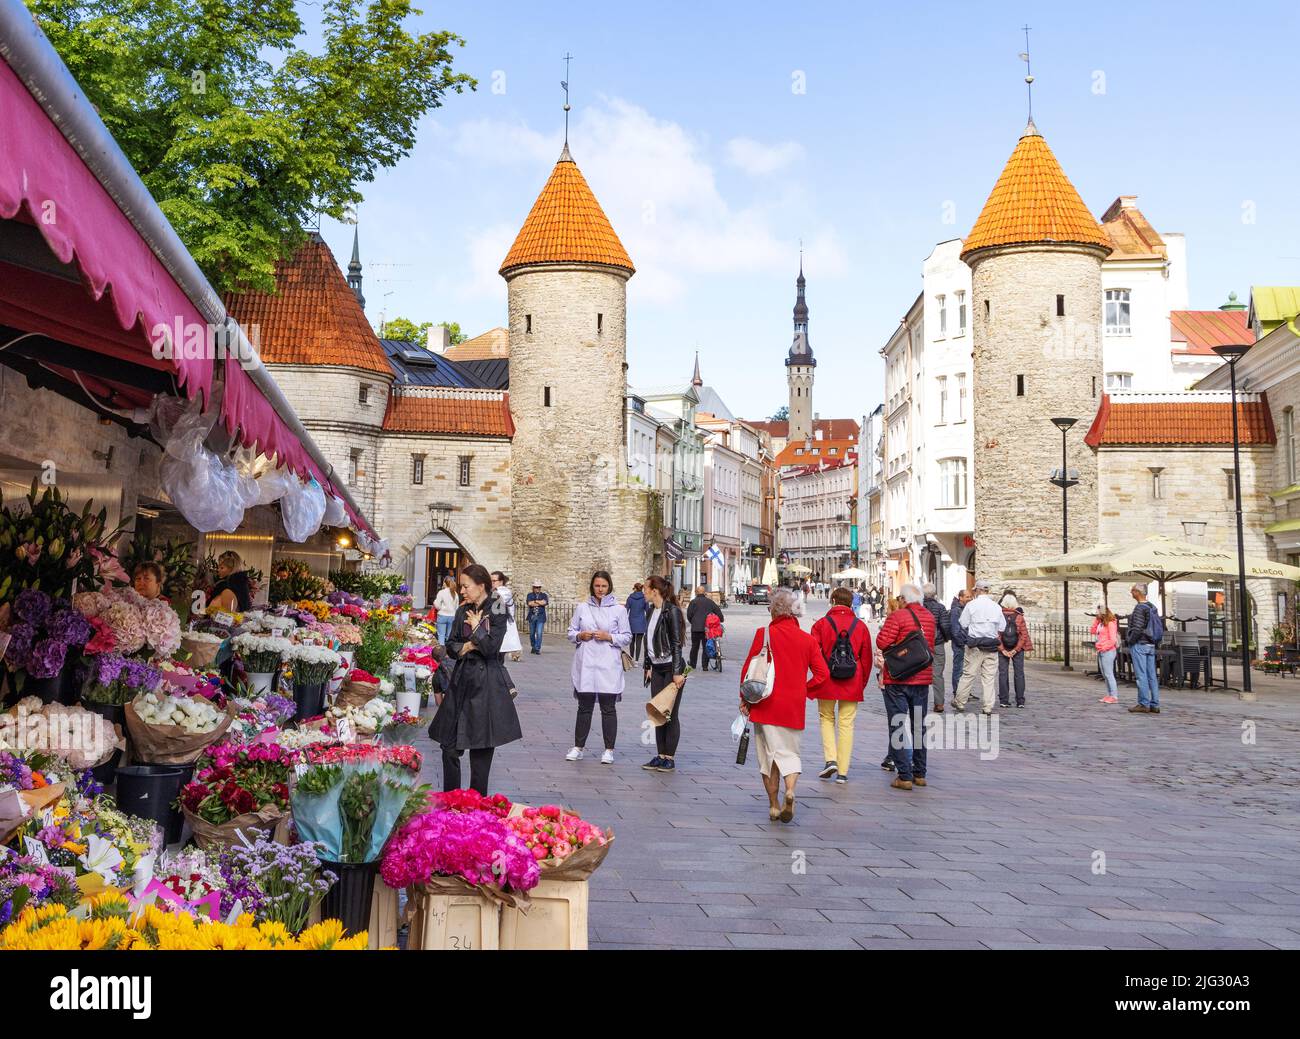 Viaje a Estonia; Tallinn Old Town; la Puerta de Viru, parte de las murallas medievales del siglo 14th, y el mercado de flores, Tallinn Estonia Europe Foto de stock